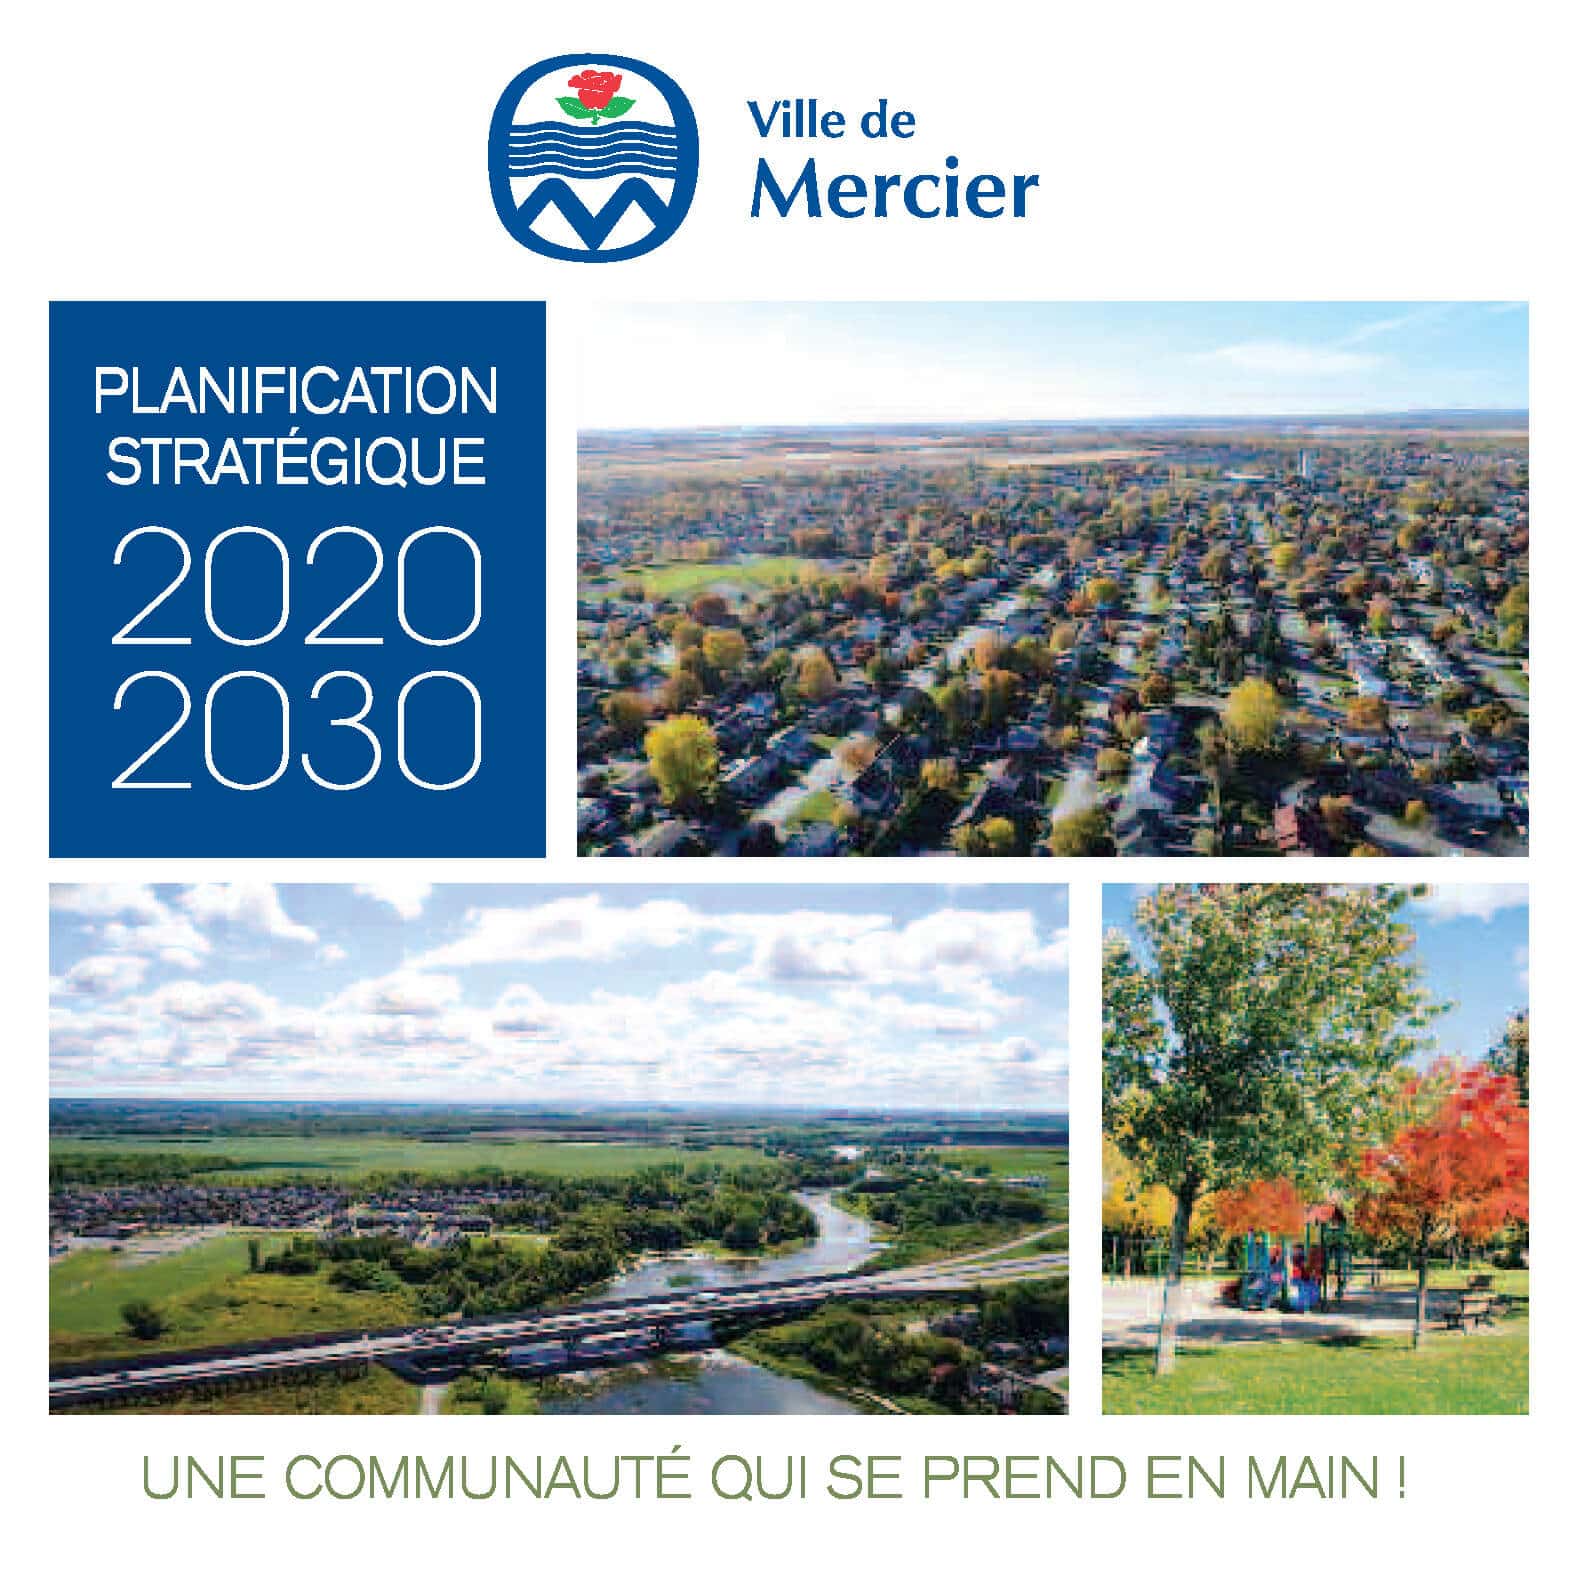 Planification stratégique 2020-2030 – Une communauté qui se prend en main!